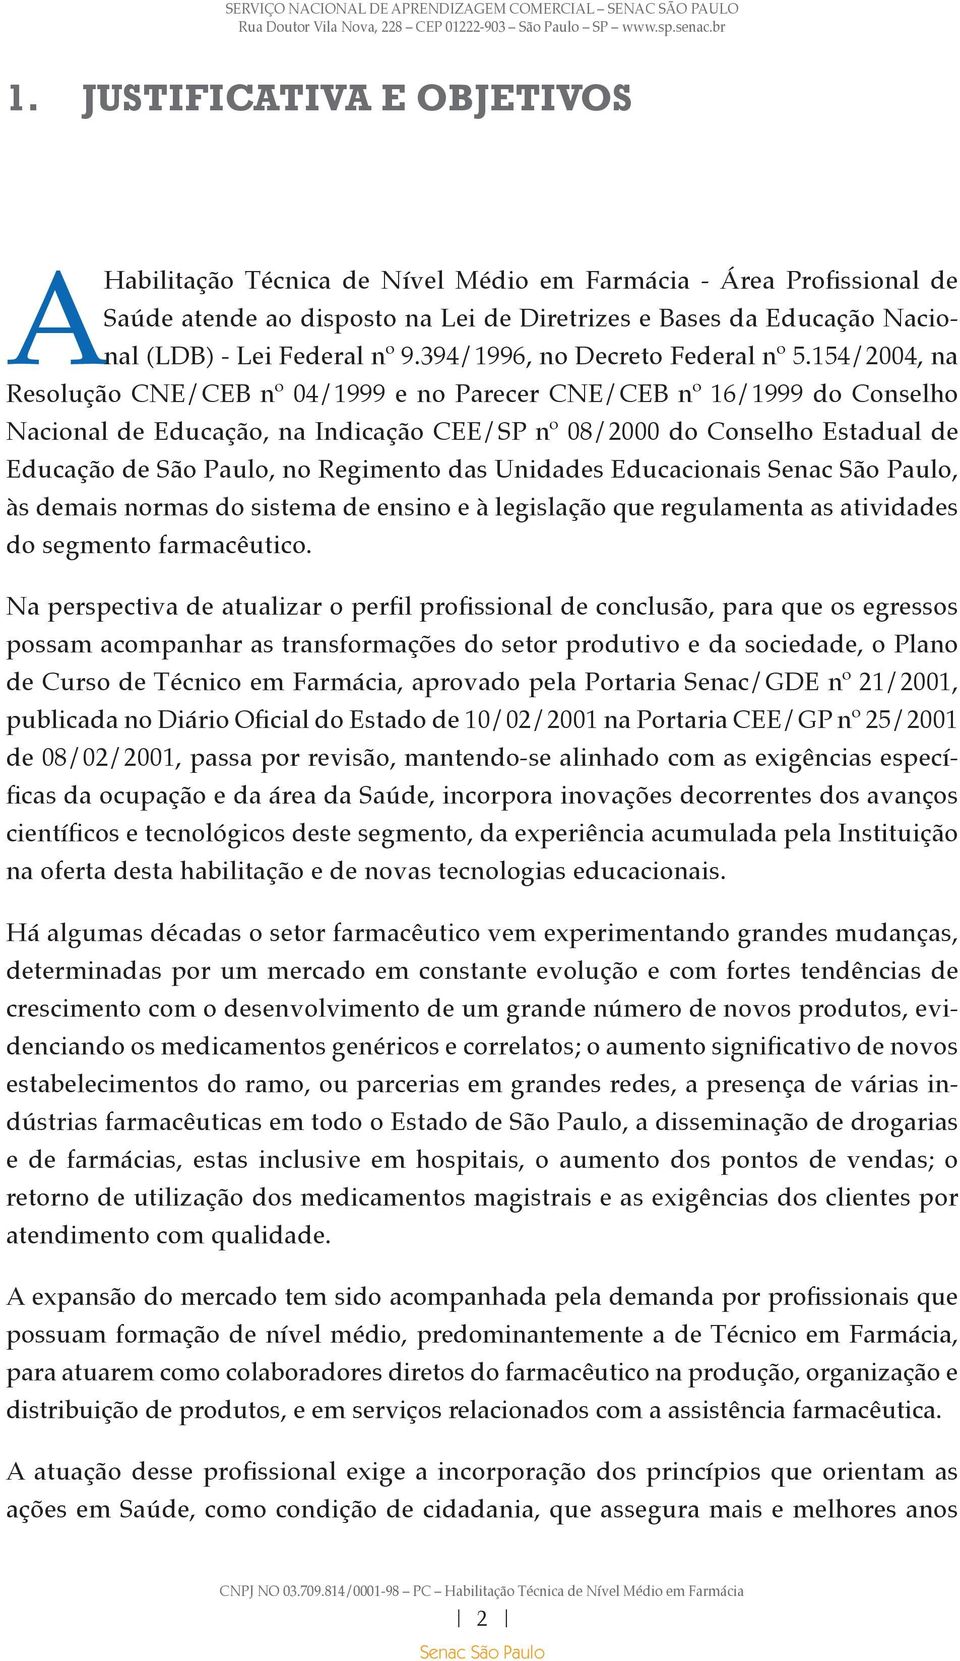 154/2004, na Resolução CNE/CEB nº 04/1999 e no Parecer CNE/CEB nº 16/1999 do Conselho Nacional de Educação, na Indicação CEE/SP nº 08/2000 do Conselho Estadual de Educação de São Paulo, no Regimento